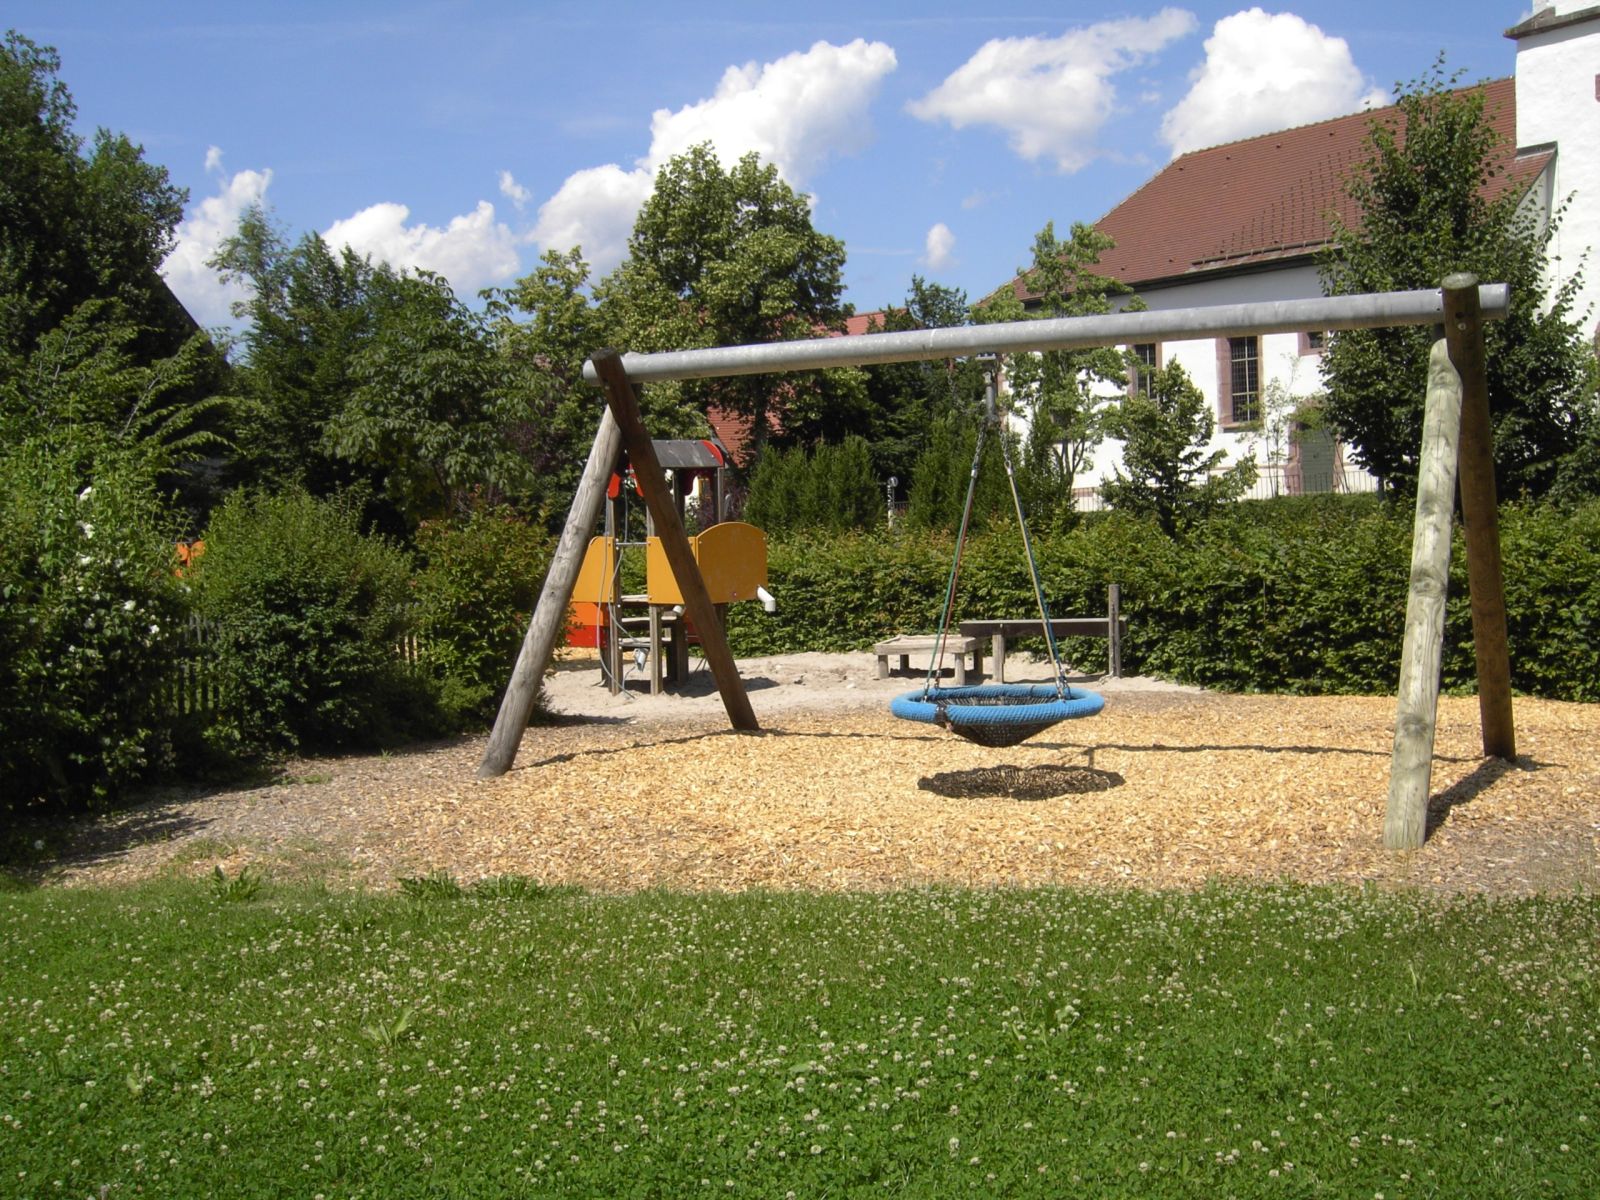  Spielplatz beim Rathaus in Schopfloch - das Bild wird mit einem Klick vergrößert 